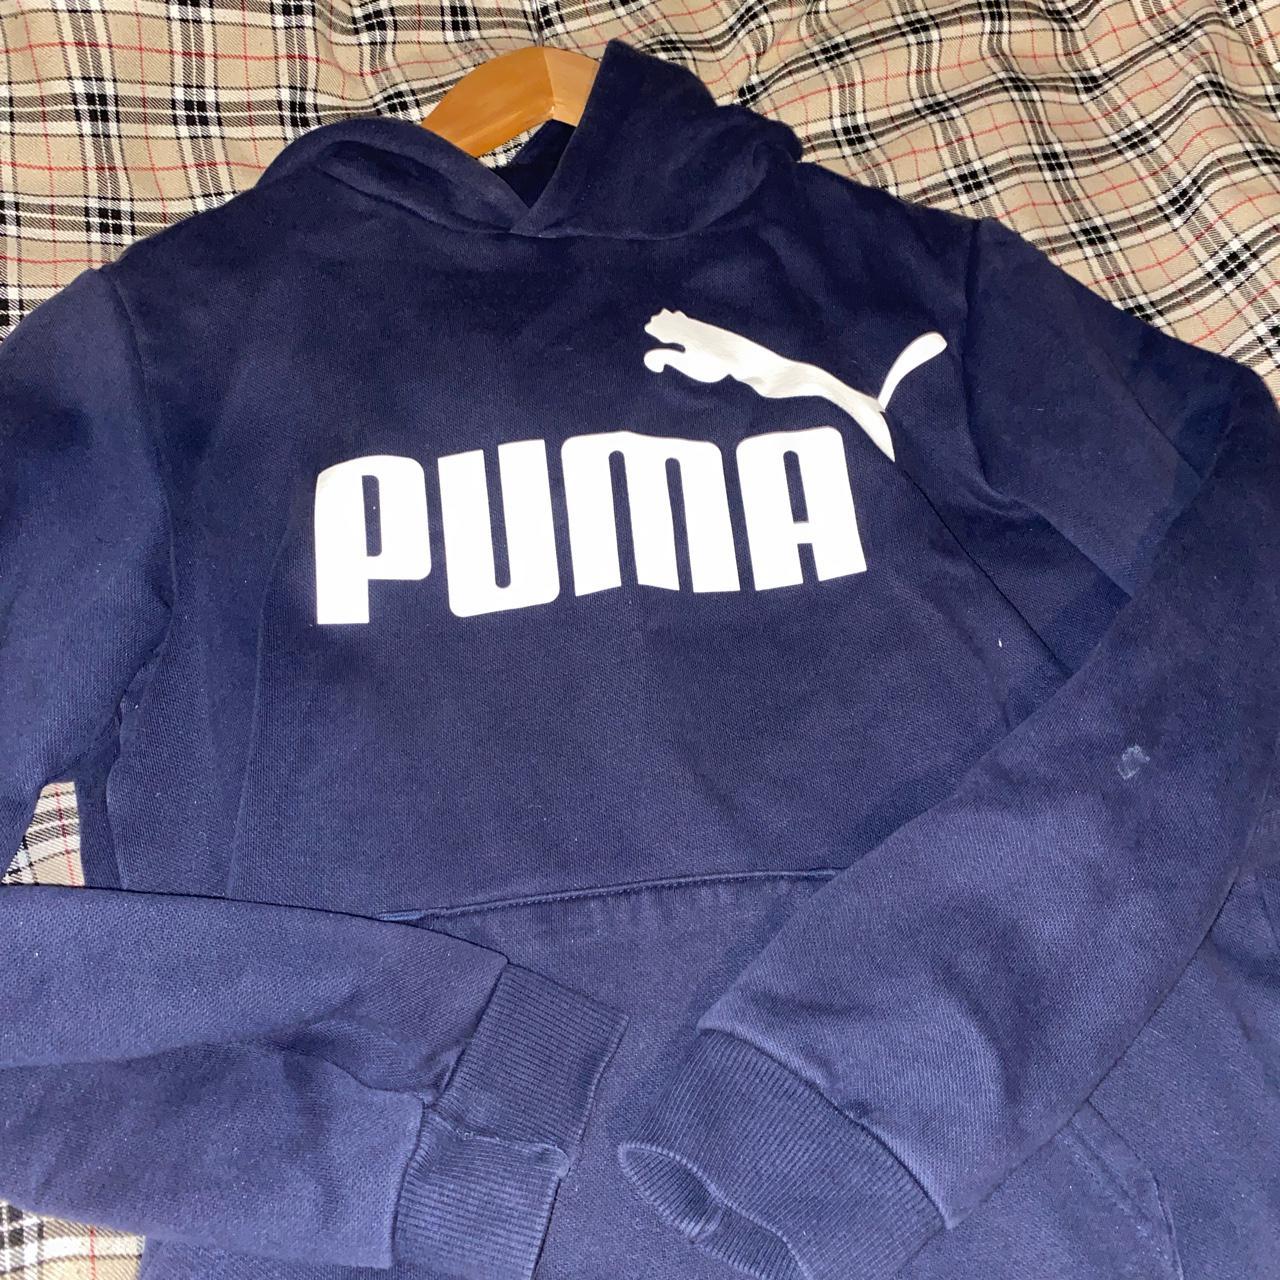 Puma hoodie! A classic dark blue puma hoodie! NOTE:... - Depop